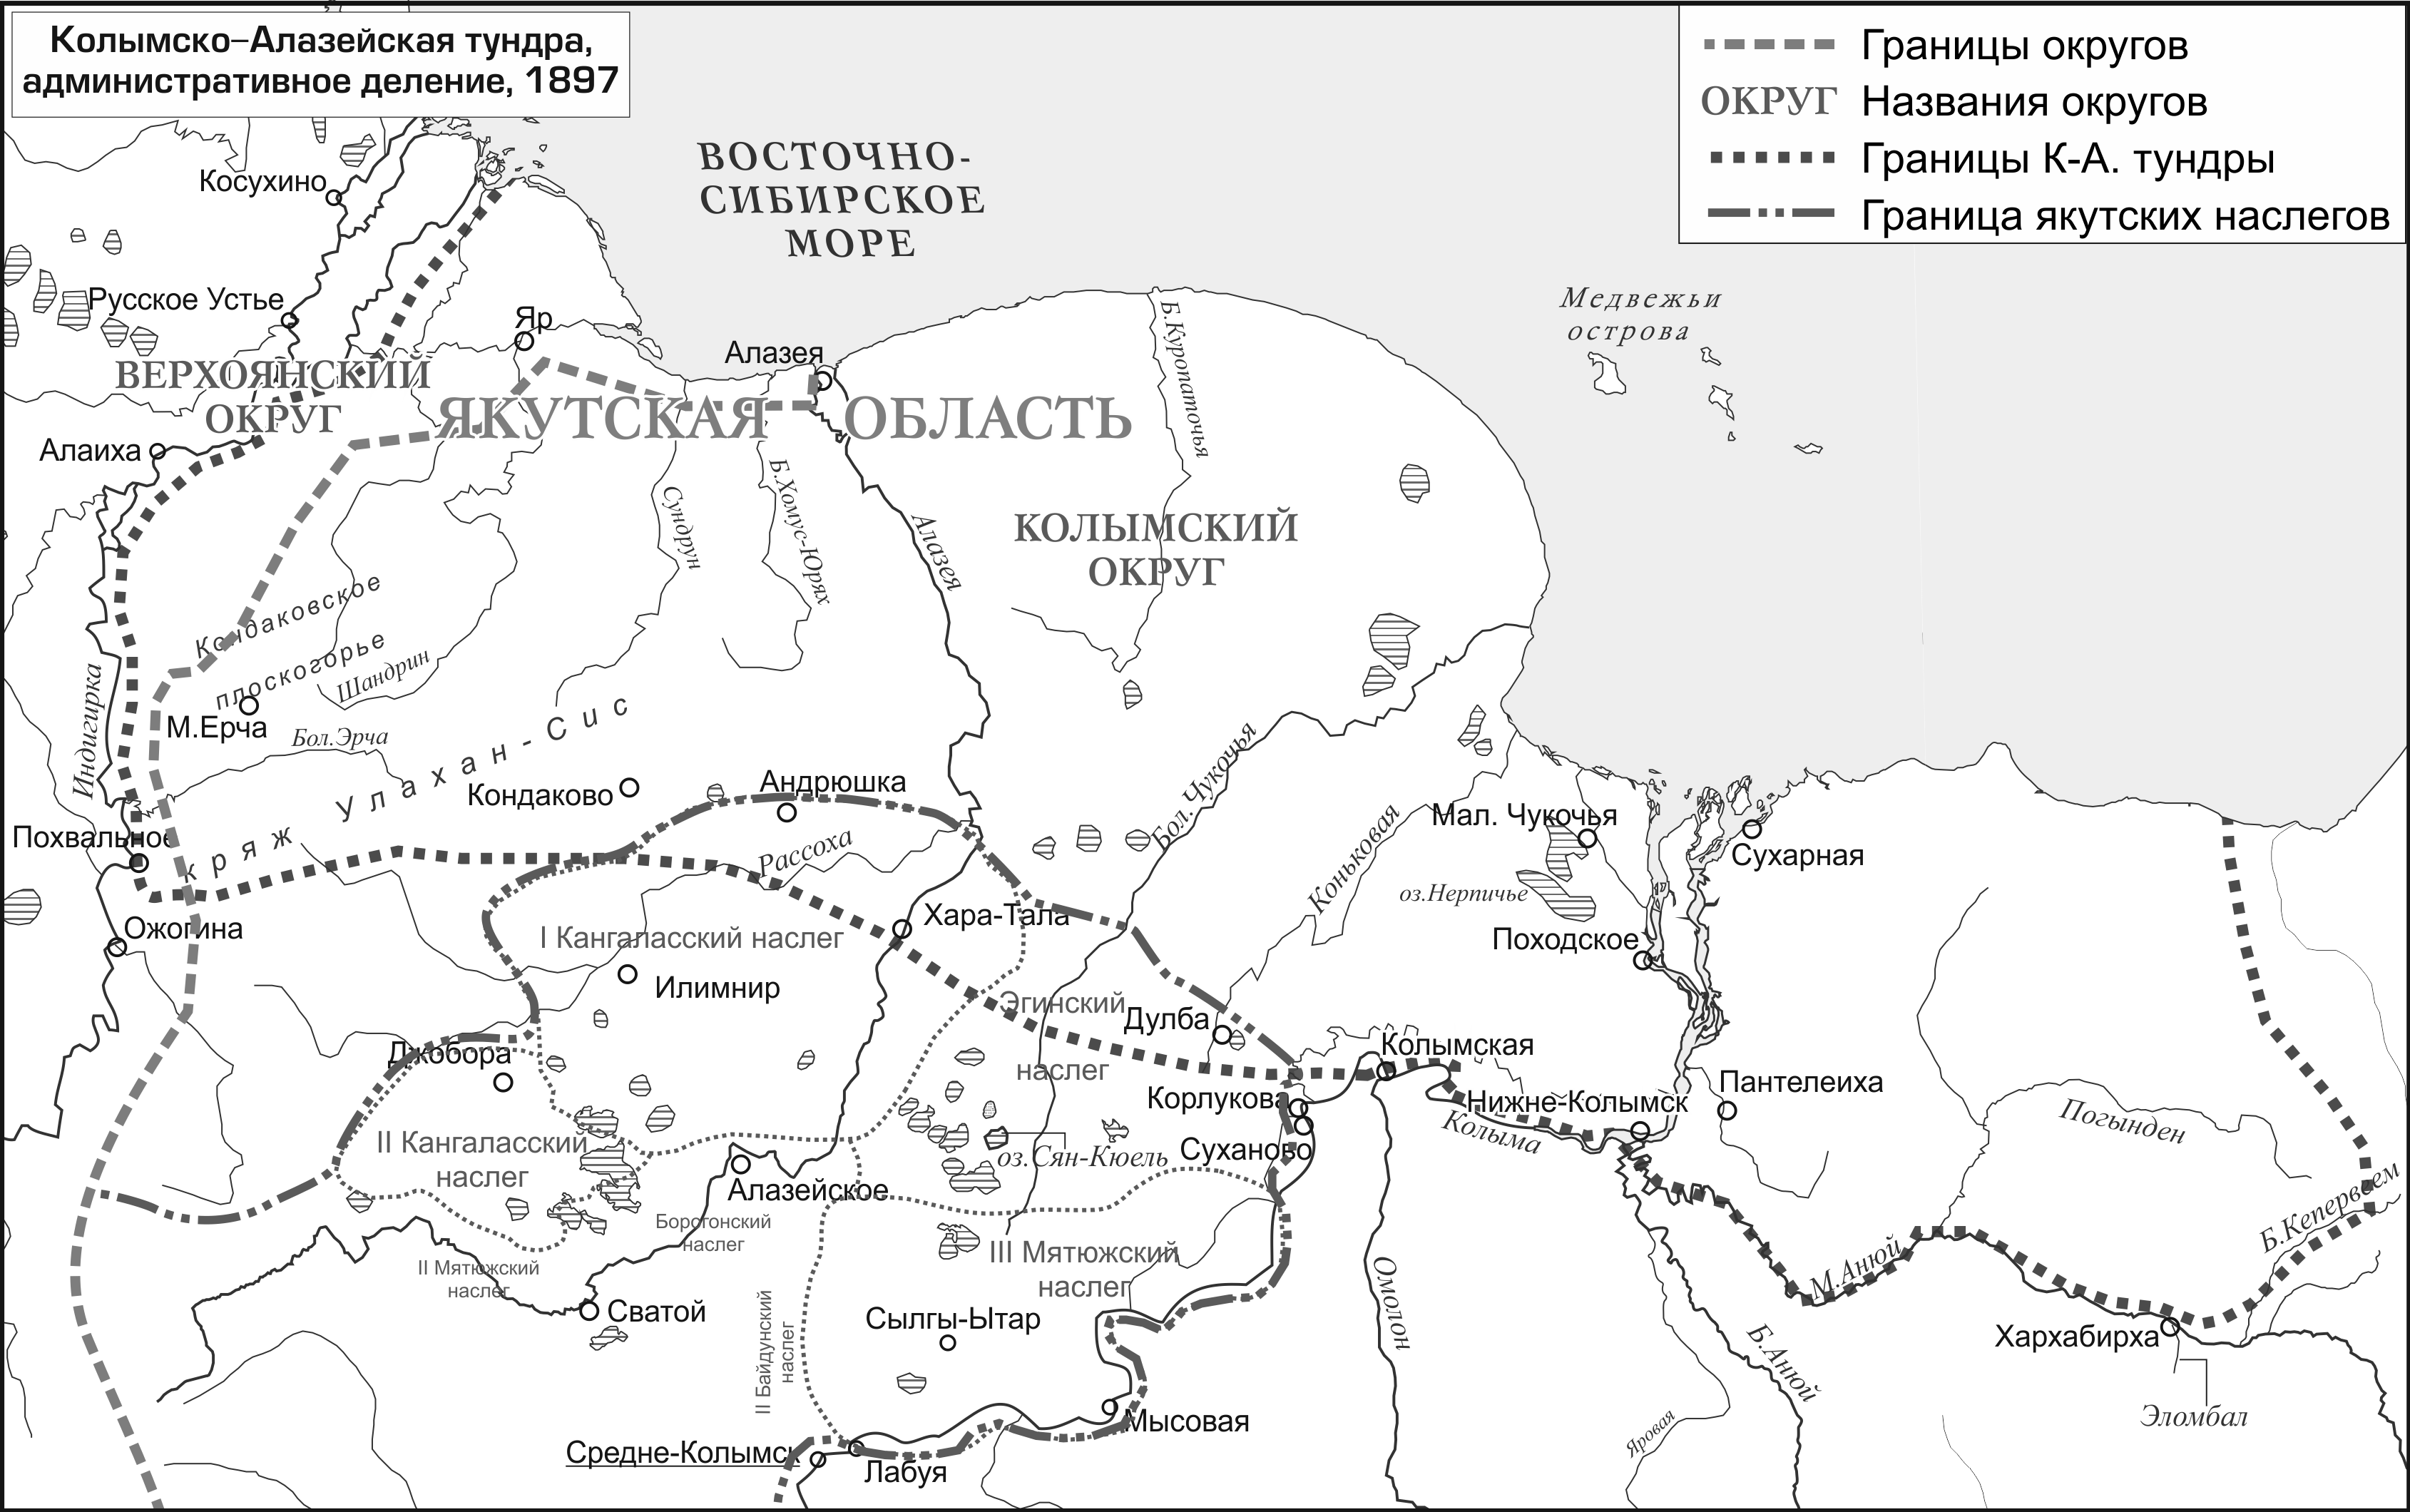 Колымско-Алазейская тундра, административное деление, 1897; автор Ю. Б. Коряков